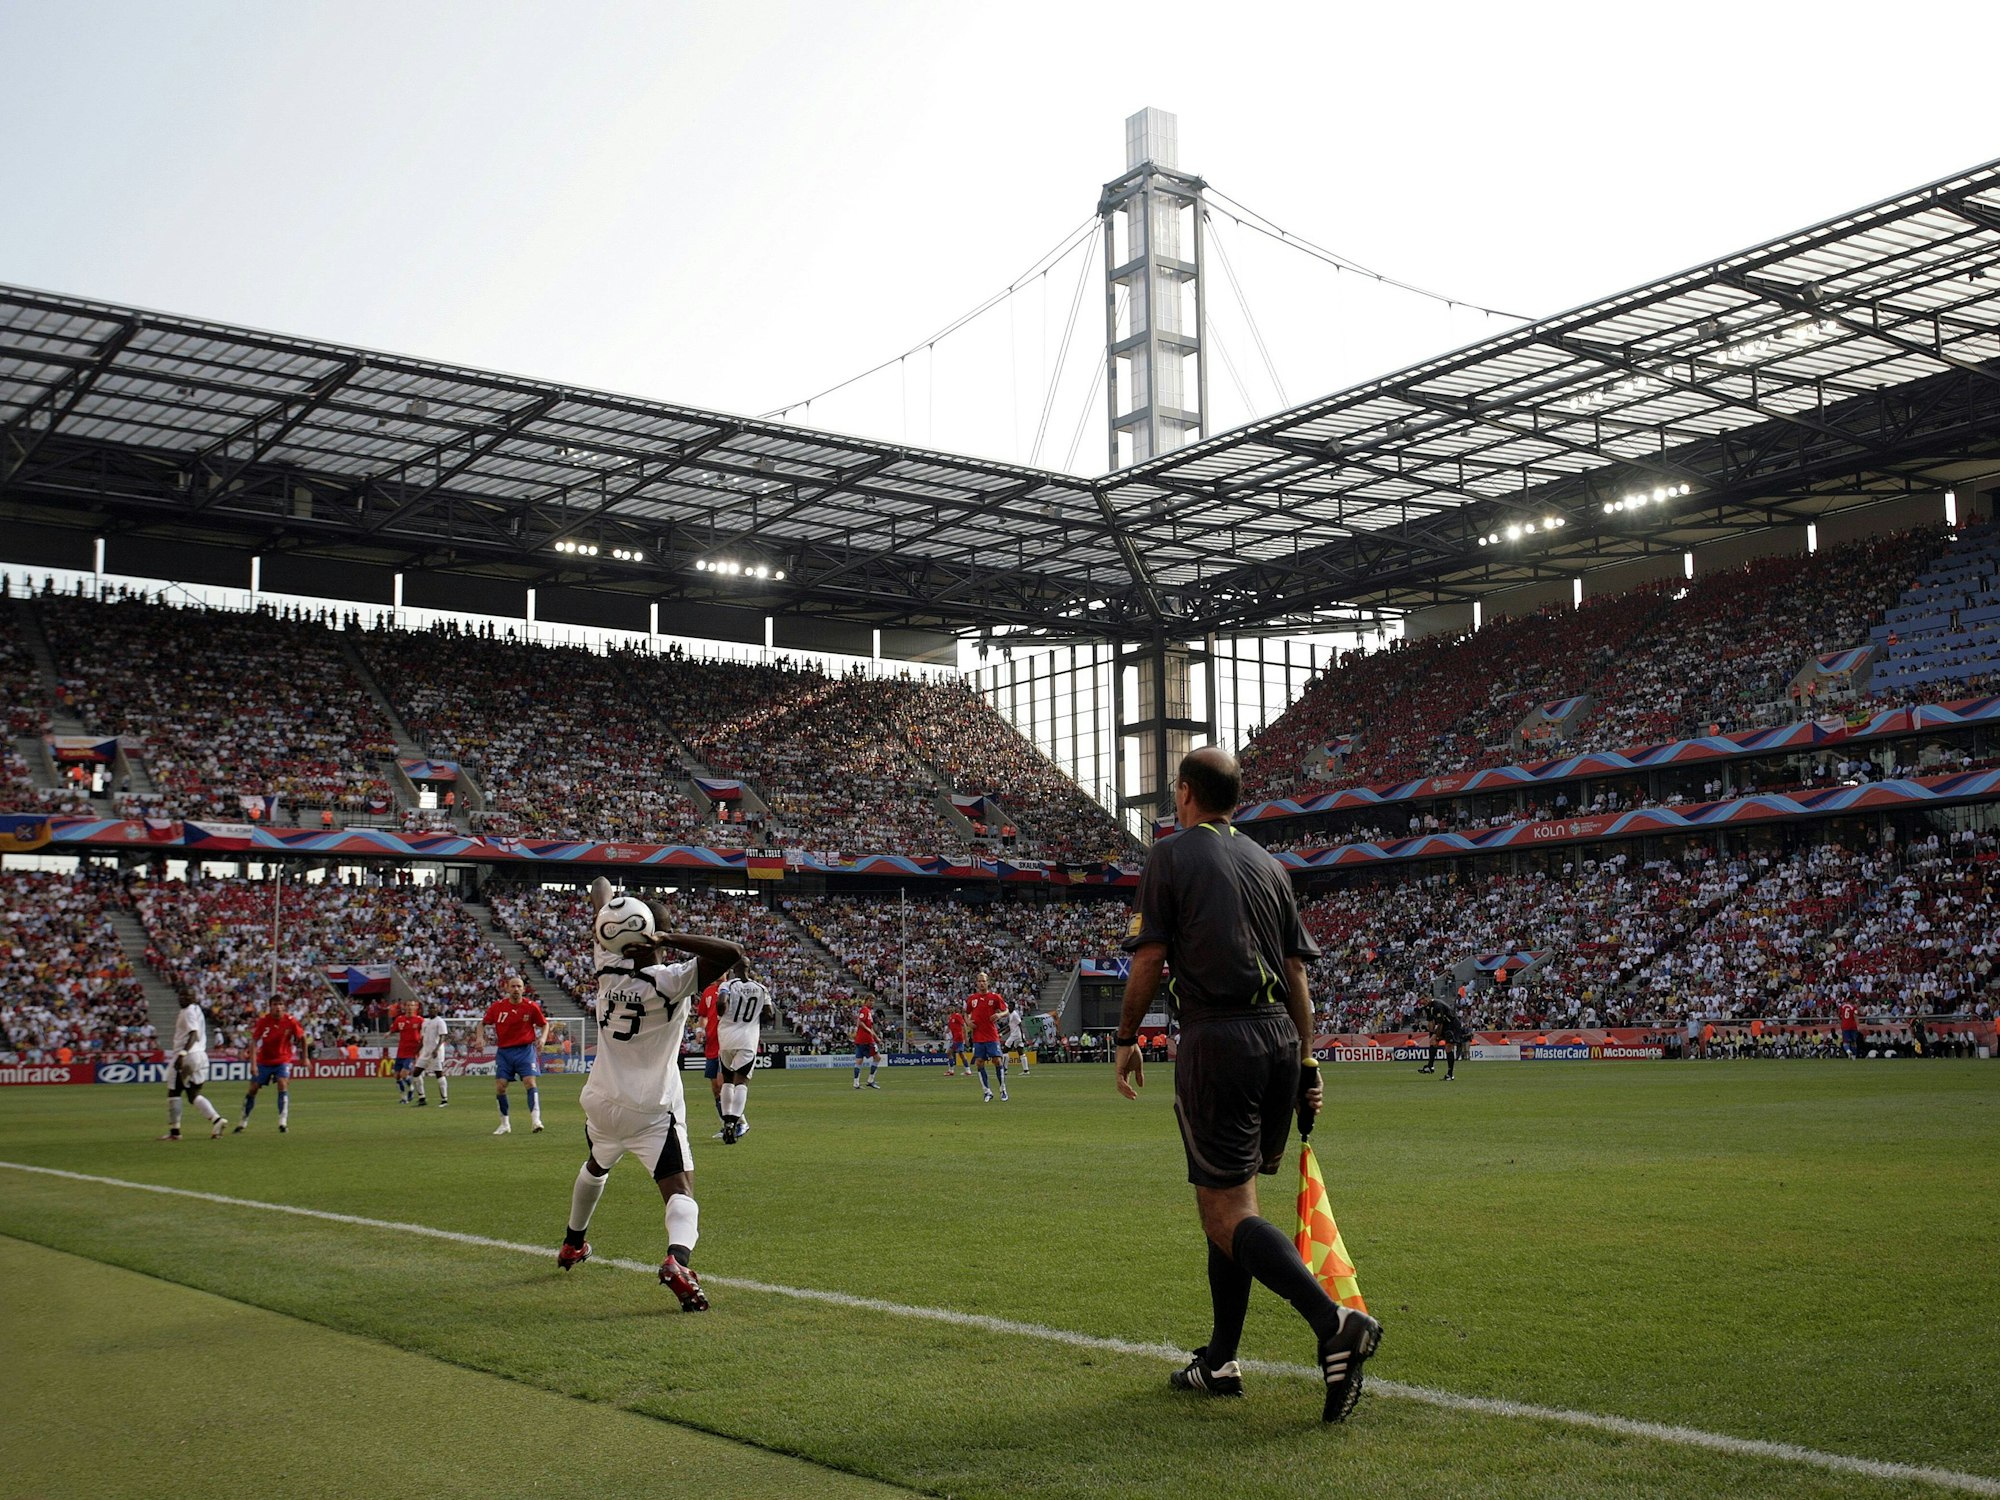 Einwurf von Ghana im Rhein-Energie-Stadion beim Spiel gegen Tschechien.